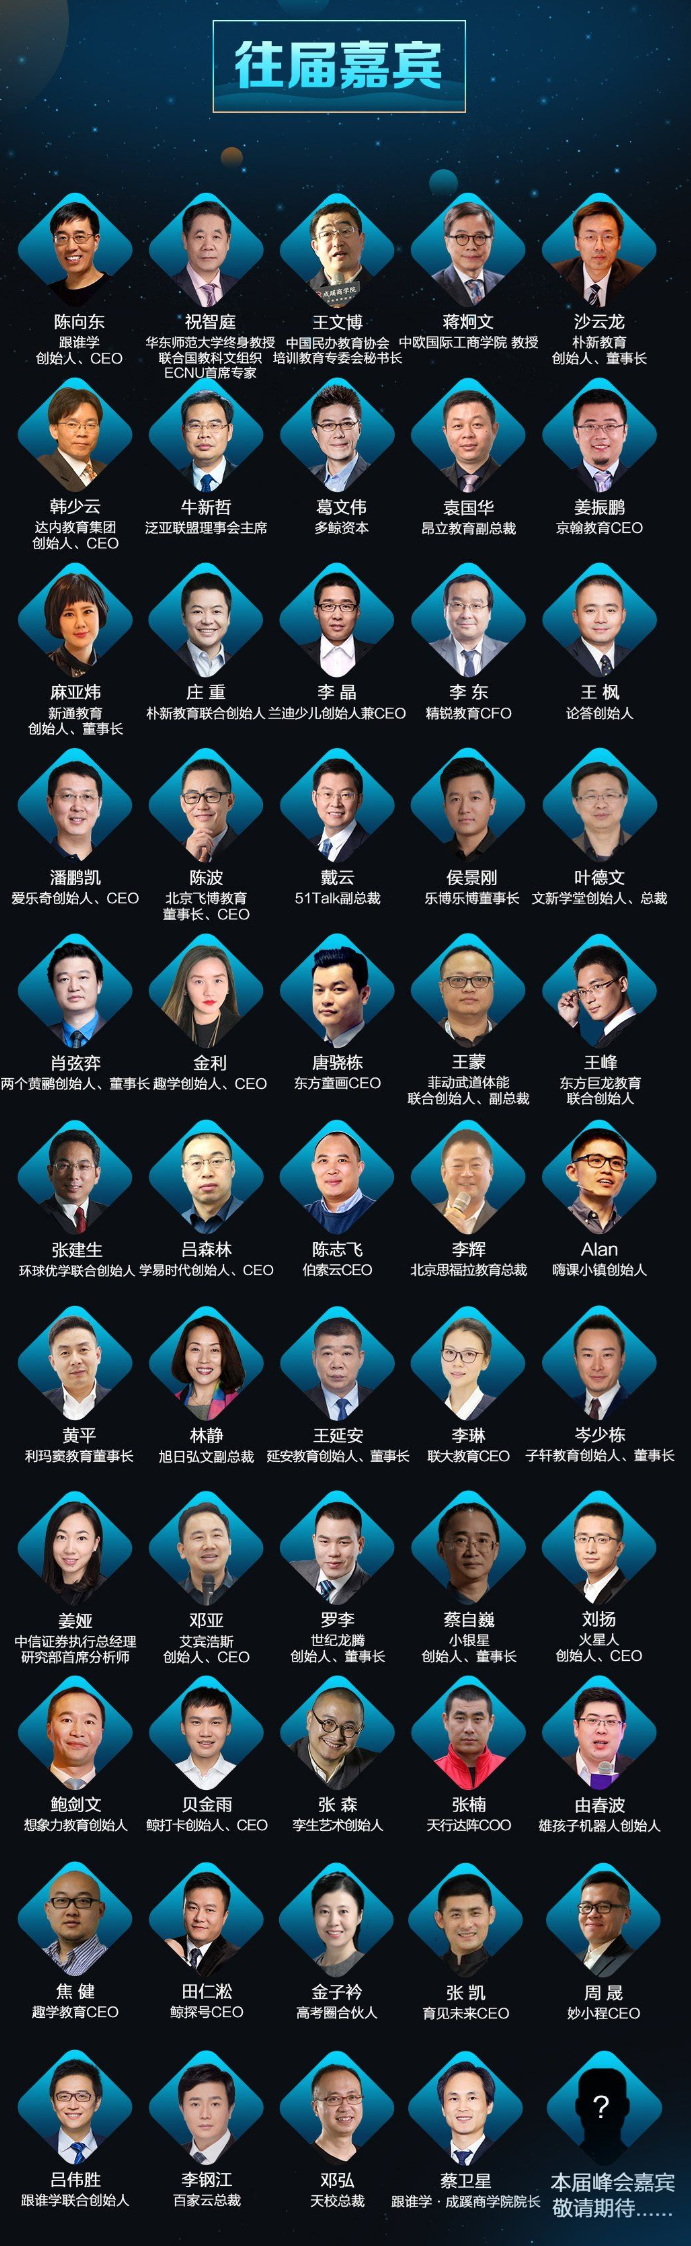 2019第二届教育升级大会（北京）